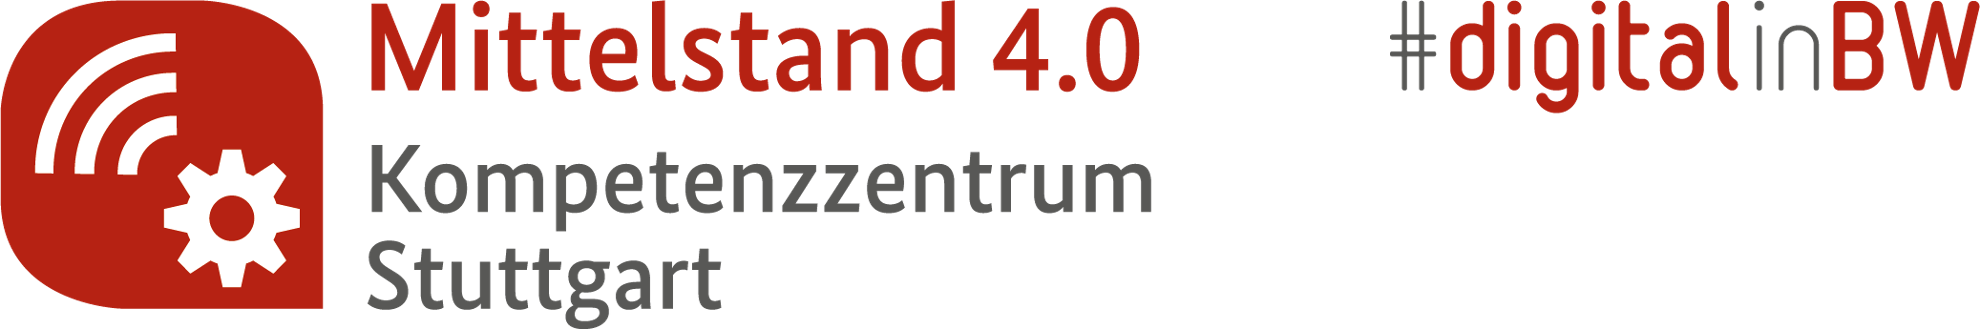 Das Kompetenzzentrum in Stuttgart Mittelstand 4.0 unterstützt vor Ort in Stuttgart kleine und mittelständische Unternehmen und Handwerksbetriebe.